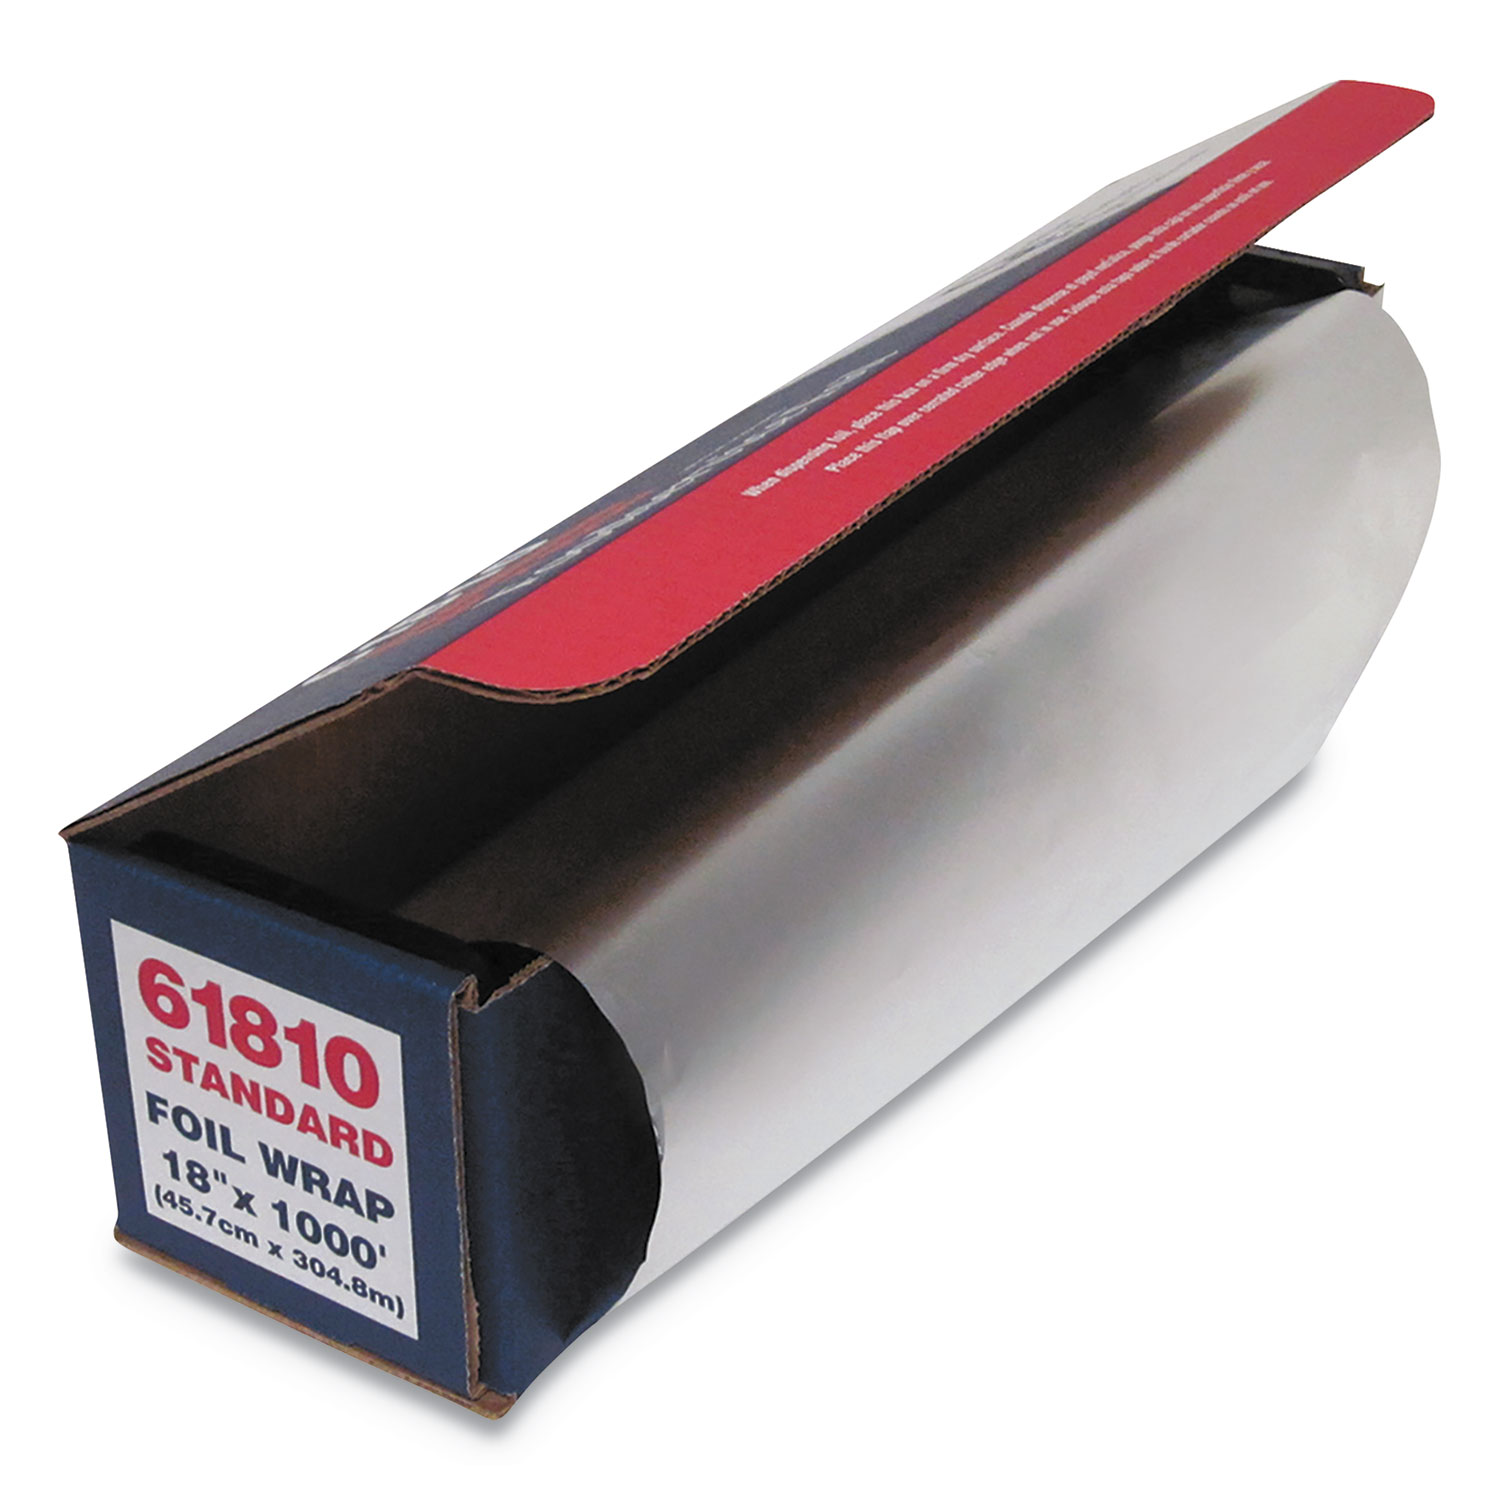  GEN 51810 Standard Aluminum Foil Roll, 18 x 1,000 ft (GEN7116) 